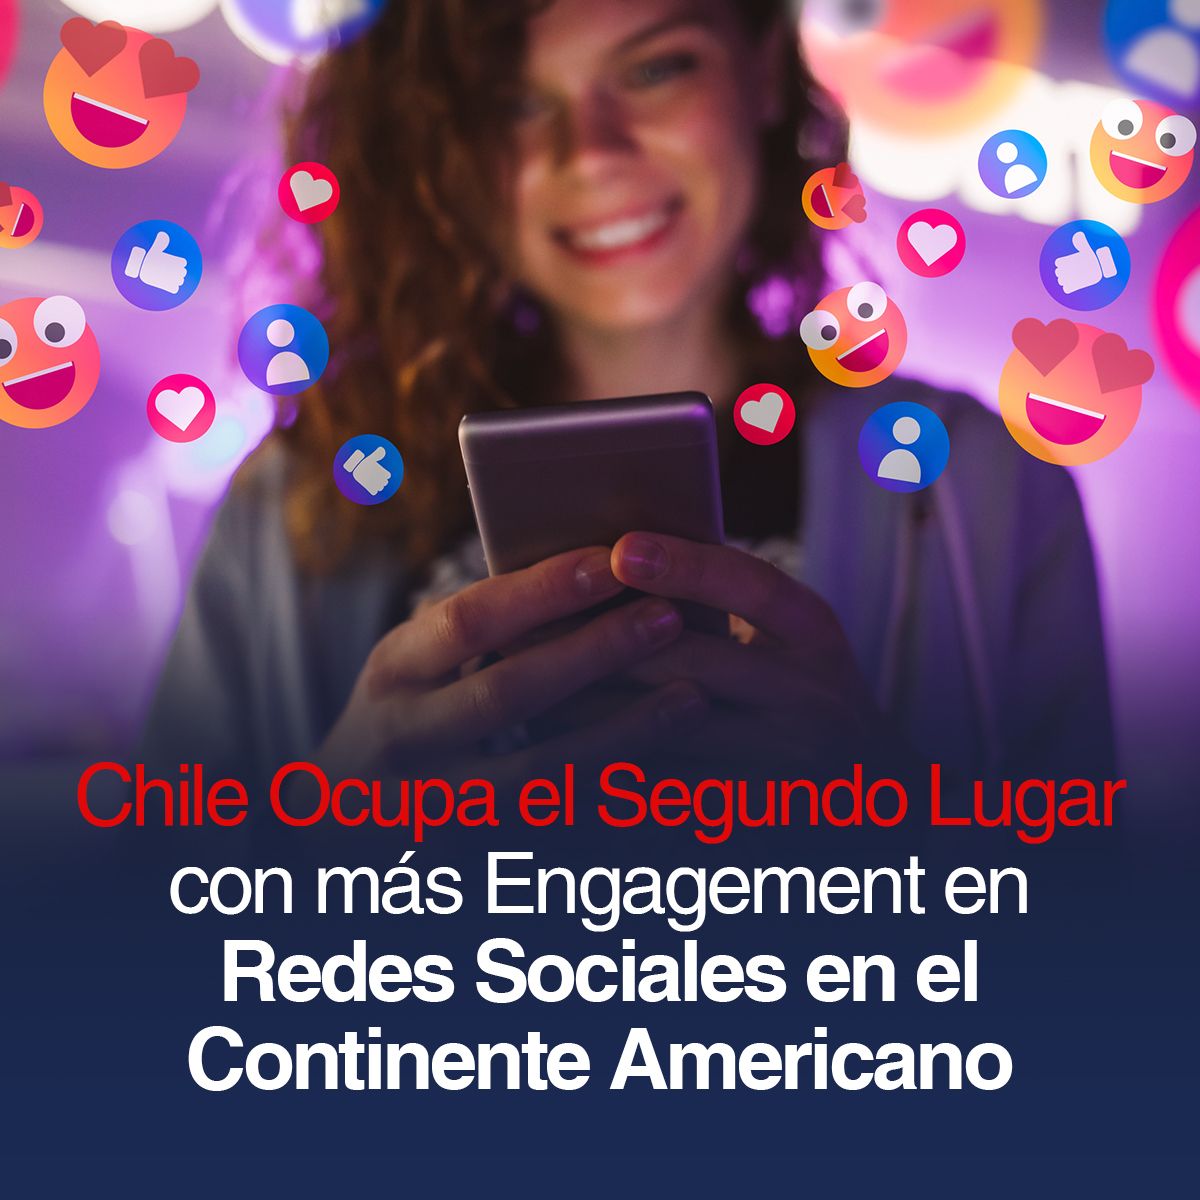 Chile Ocupa el Segundo Lugar con más Engagement en Redes Sociales en el Continente Americano